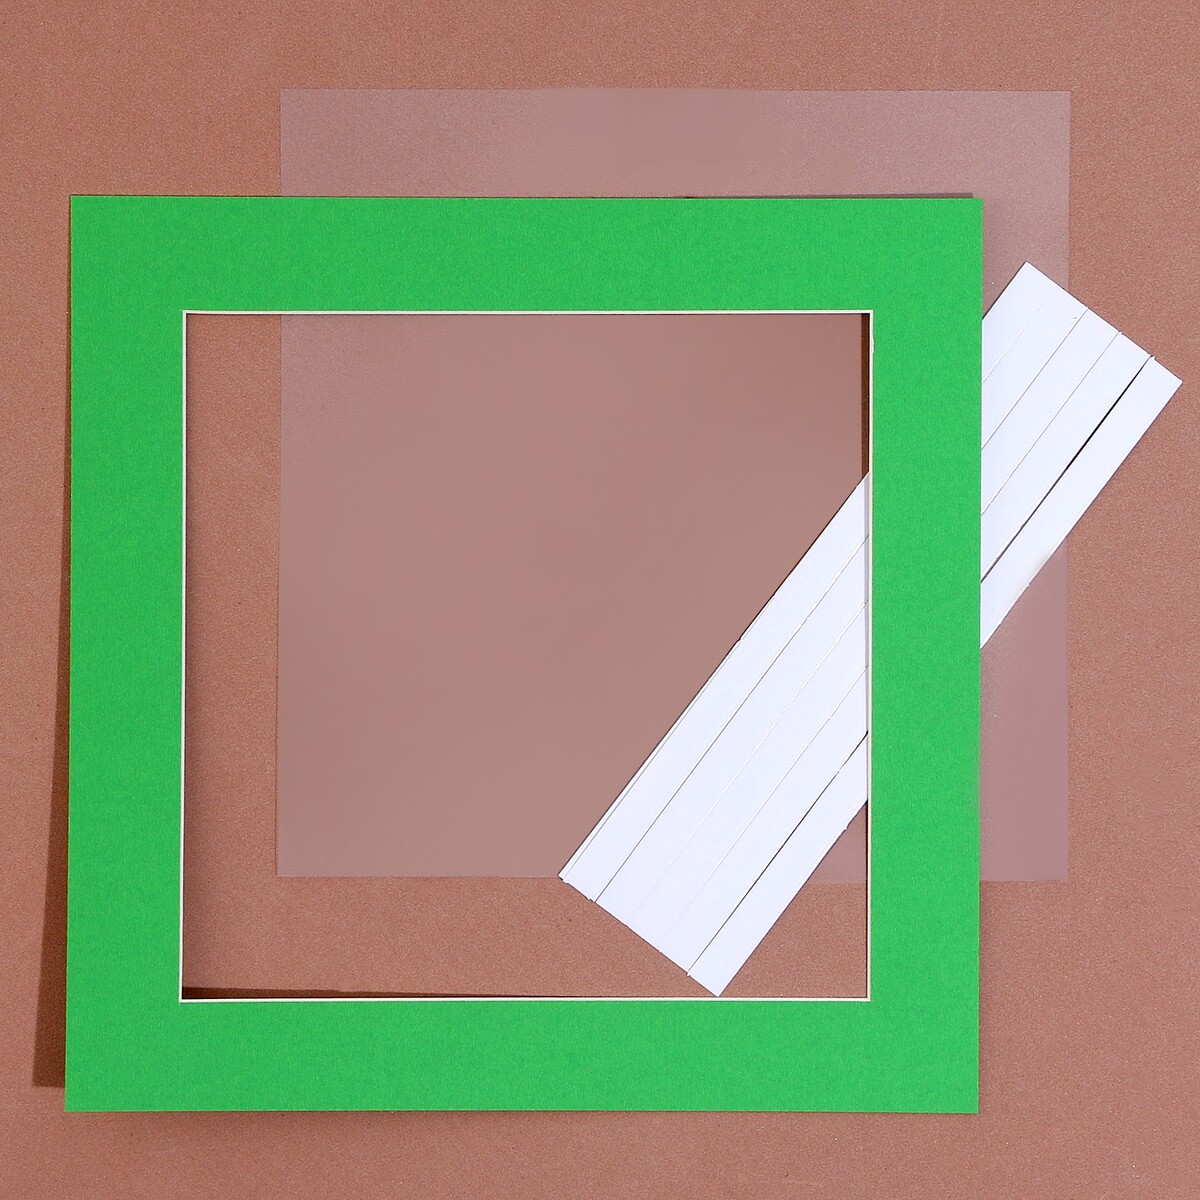 Паспарту размер рамки 24 × 24 см, прозрачный лист, клейкая лента, цвет зеленый паспарту размер рамки 30 × 30 прозрачный лист клейкая лента белый